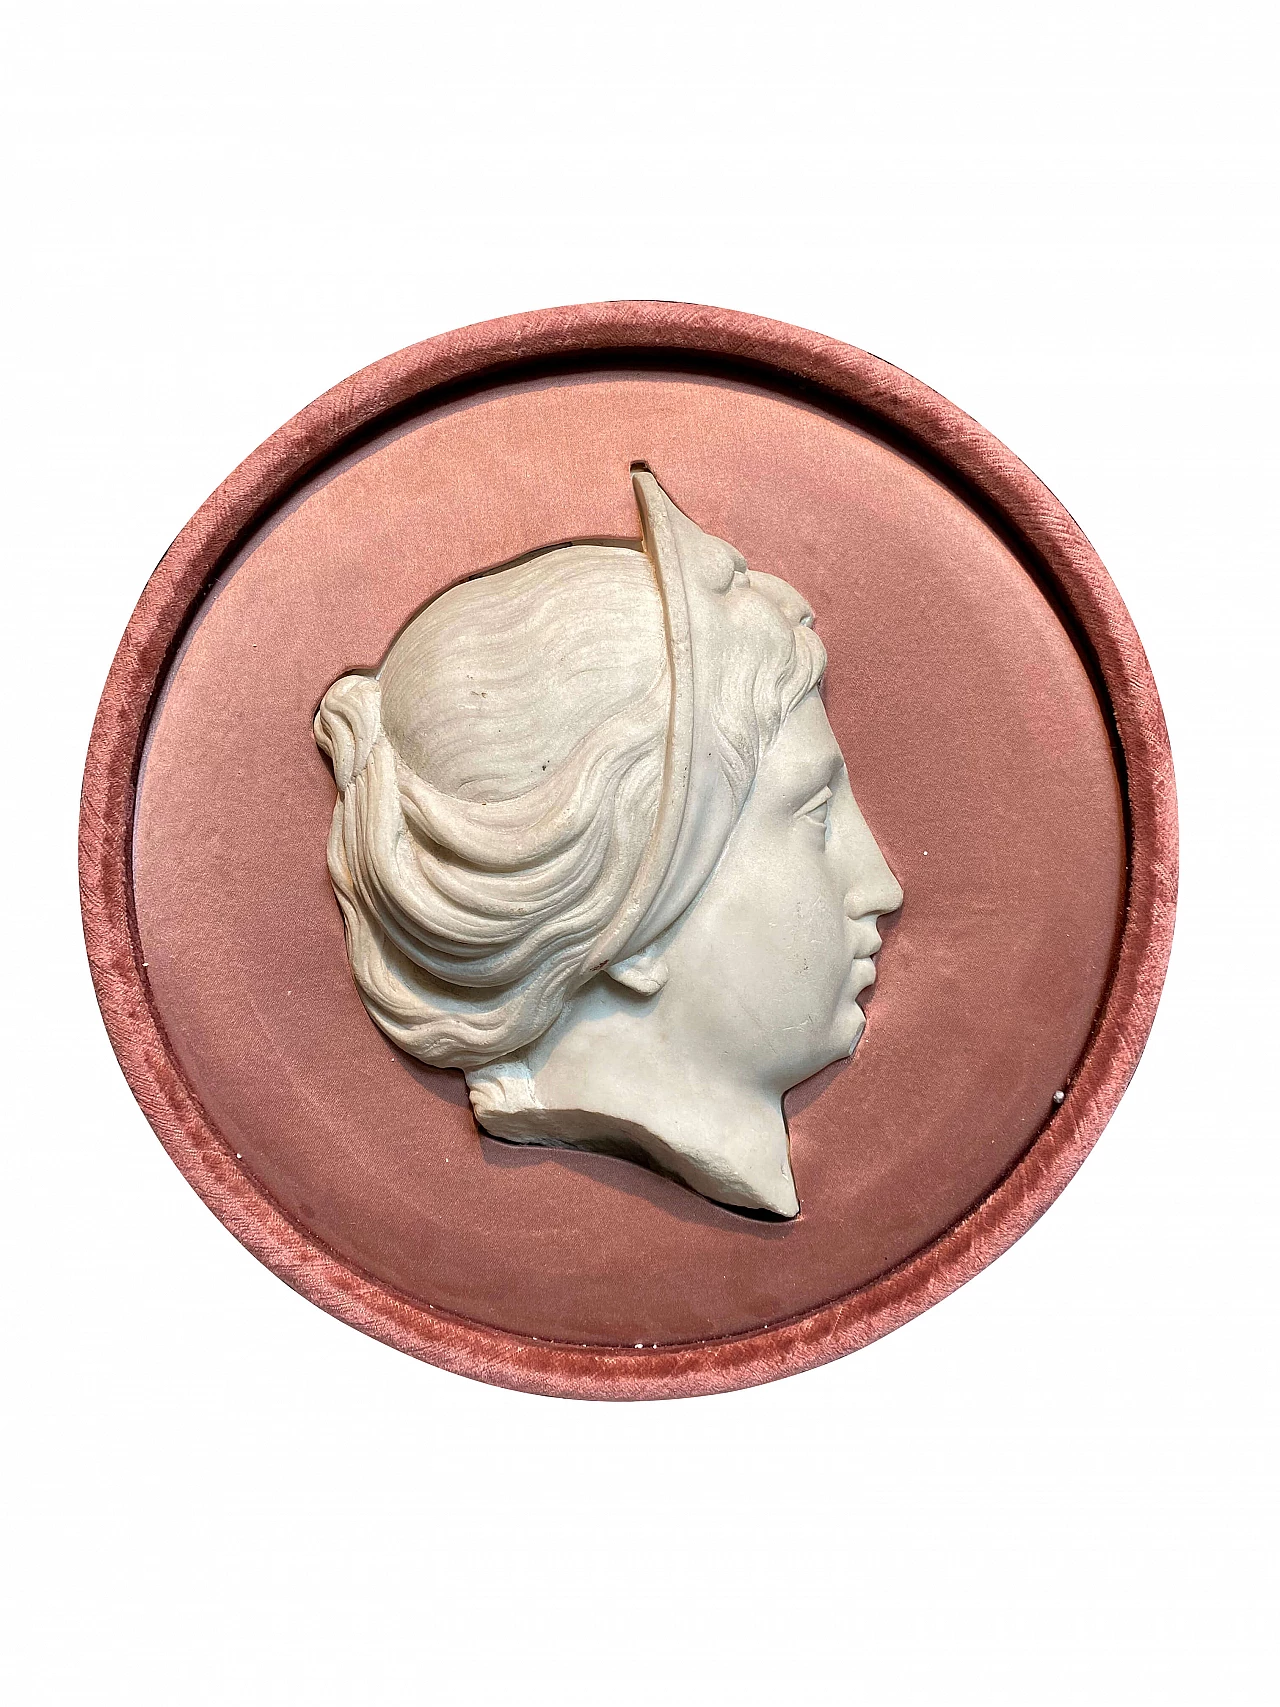 Tondo Neoclassico con profilo di dama in marmo su velluto rosa 1249461